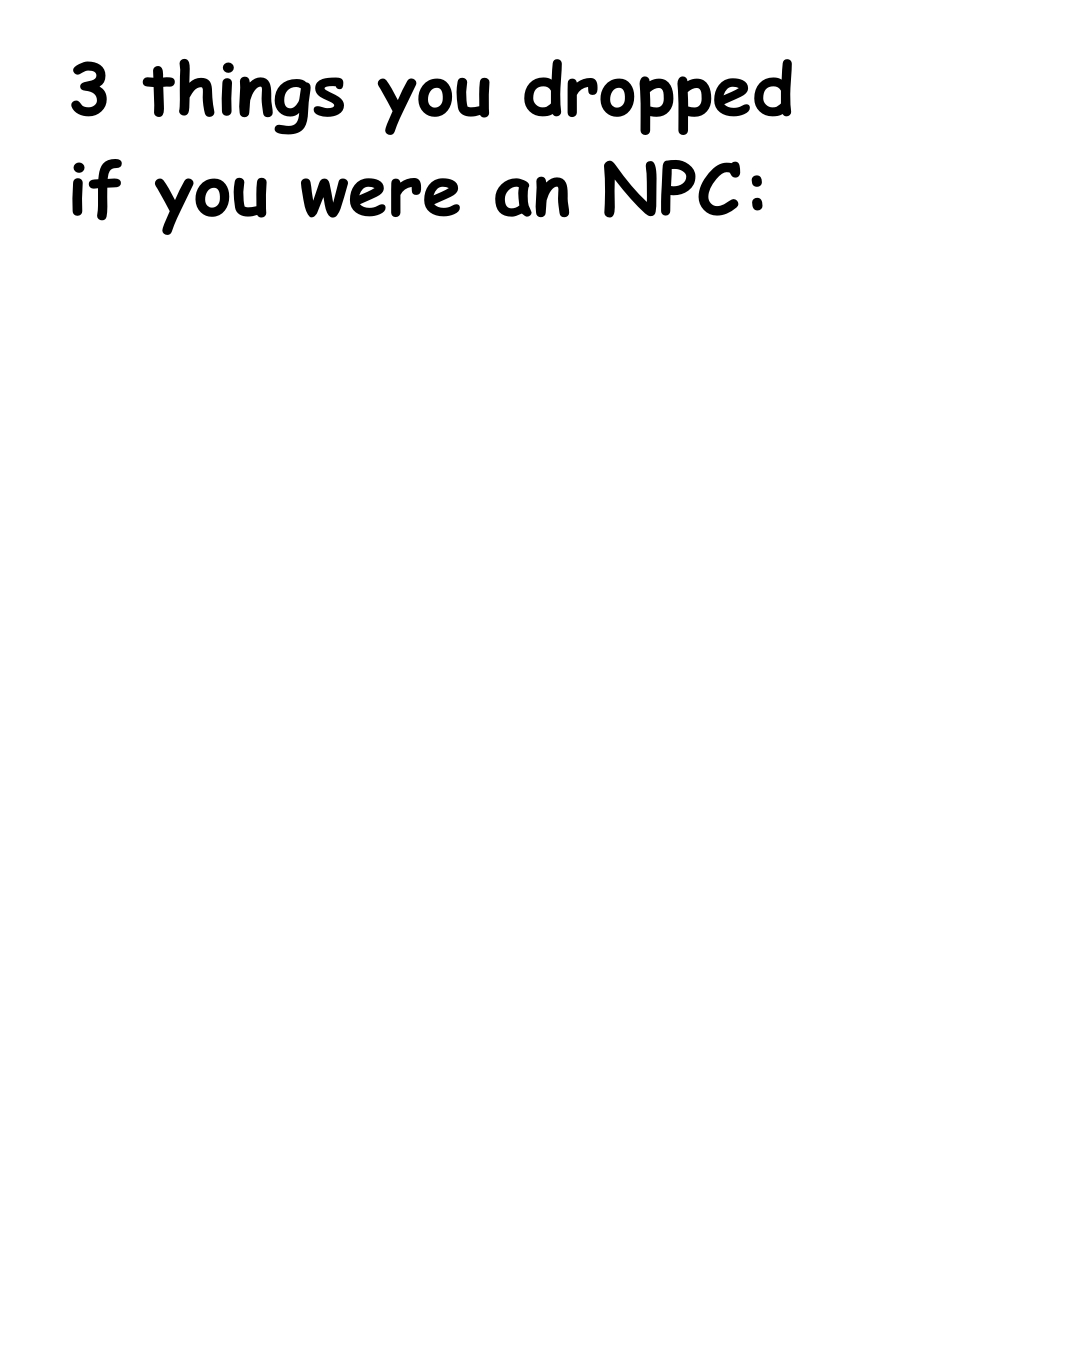 3 things you dropped if you were an npc Blank Meme Template